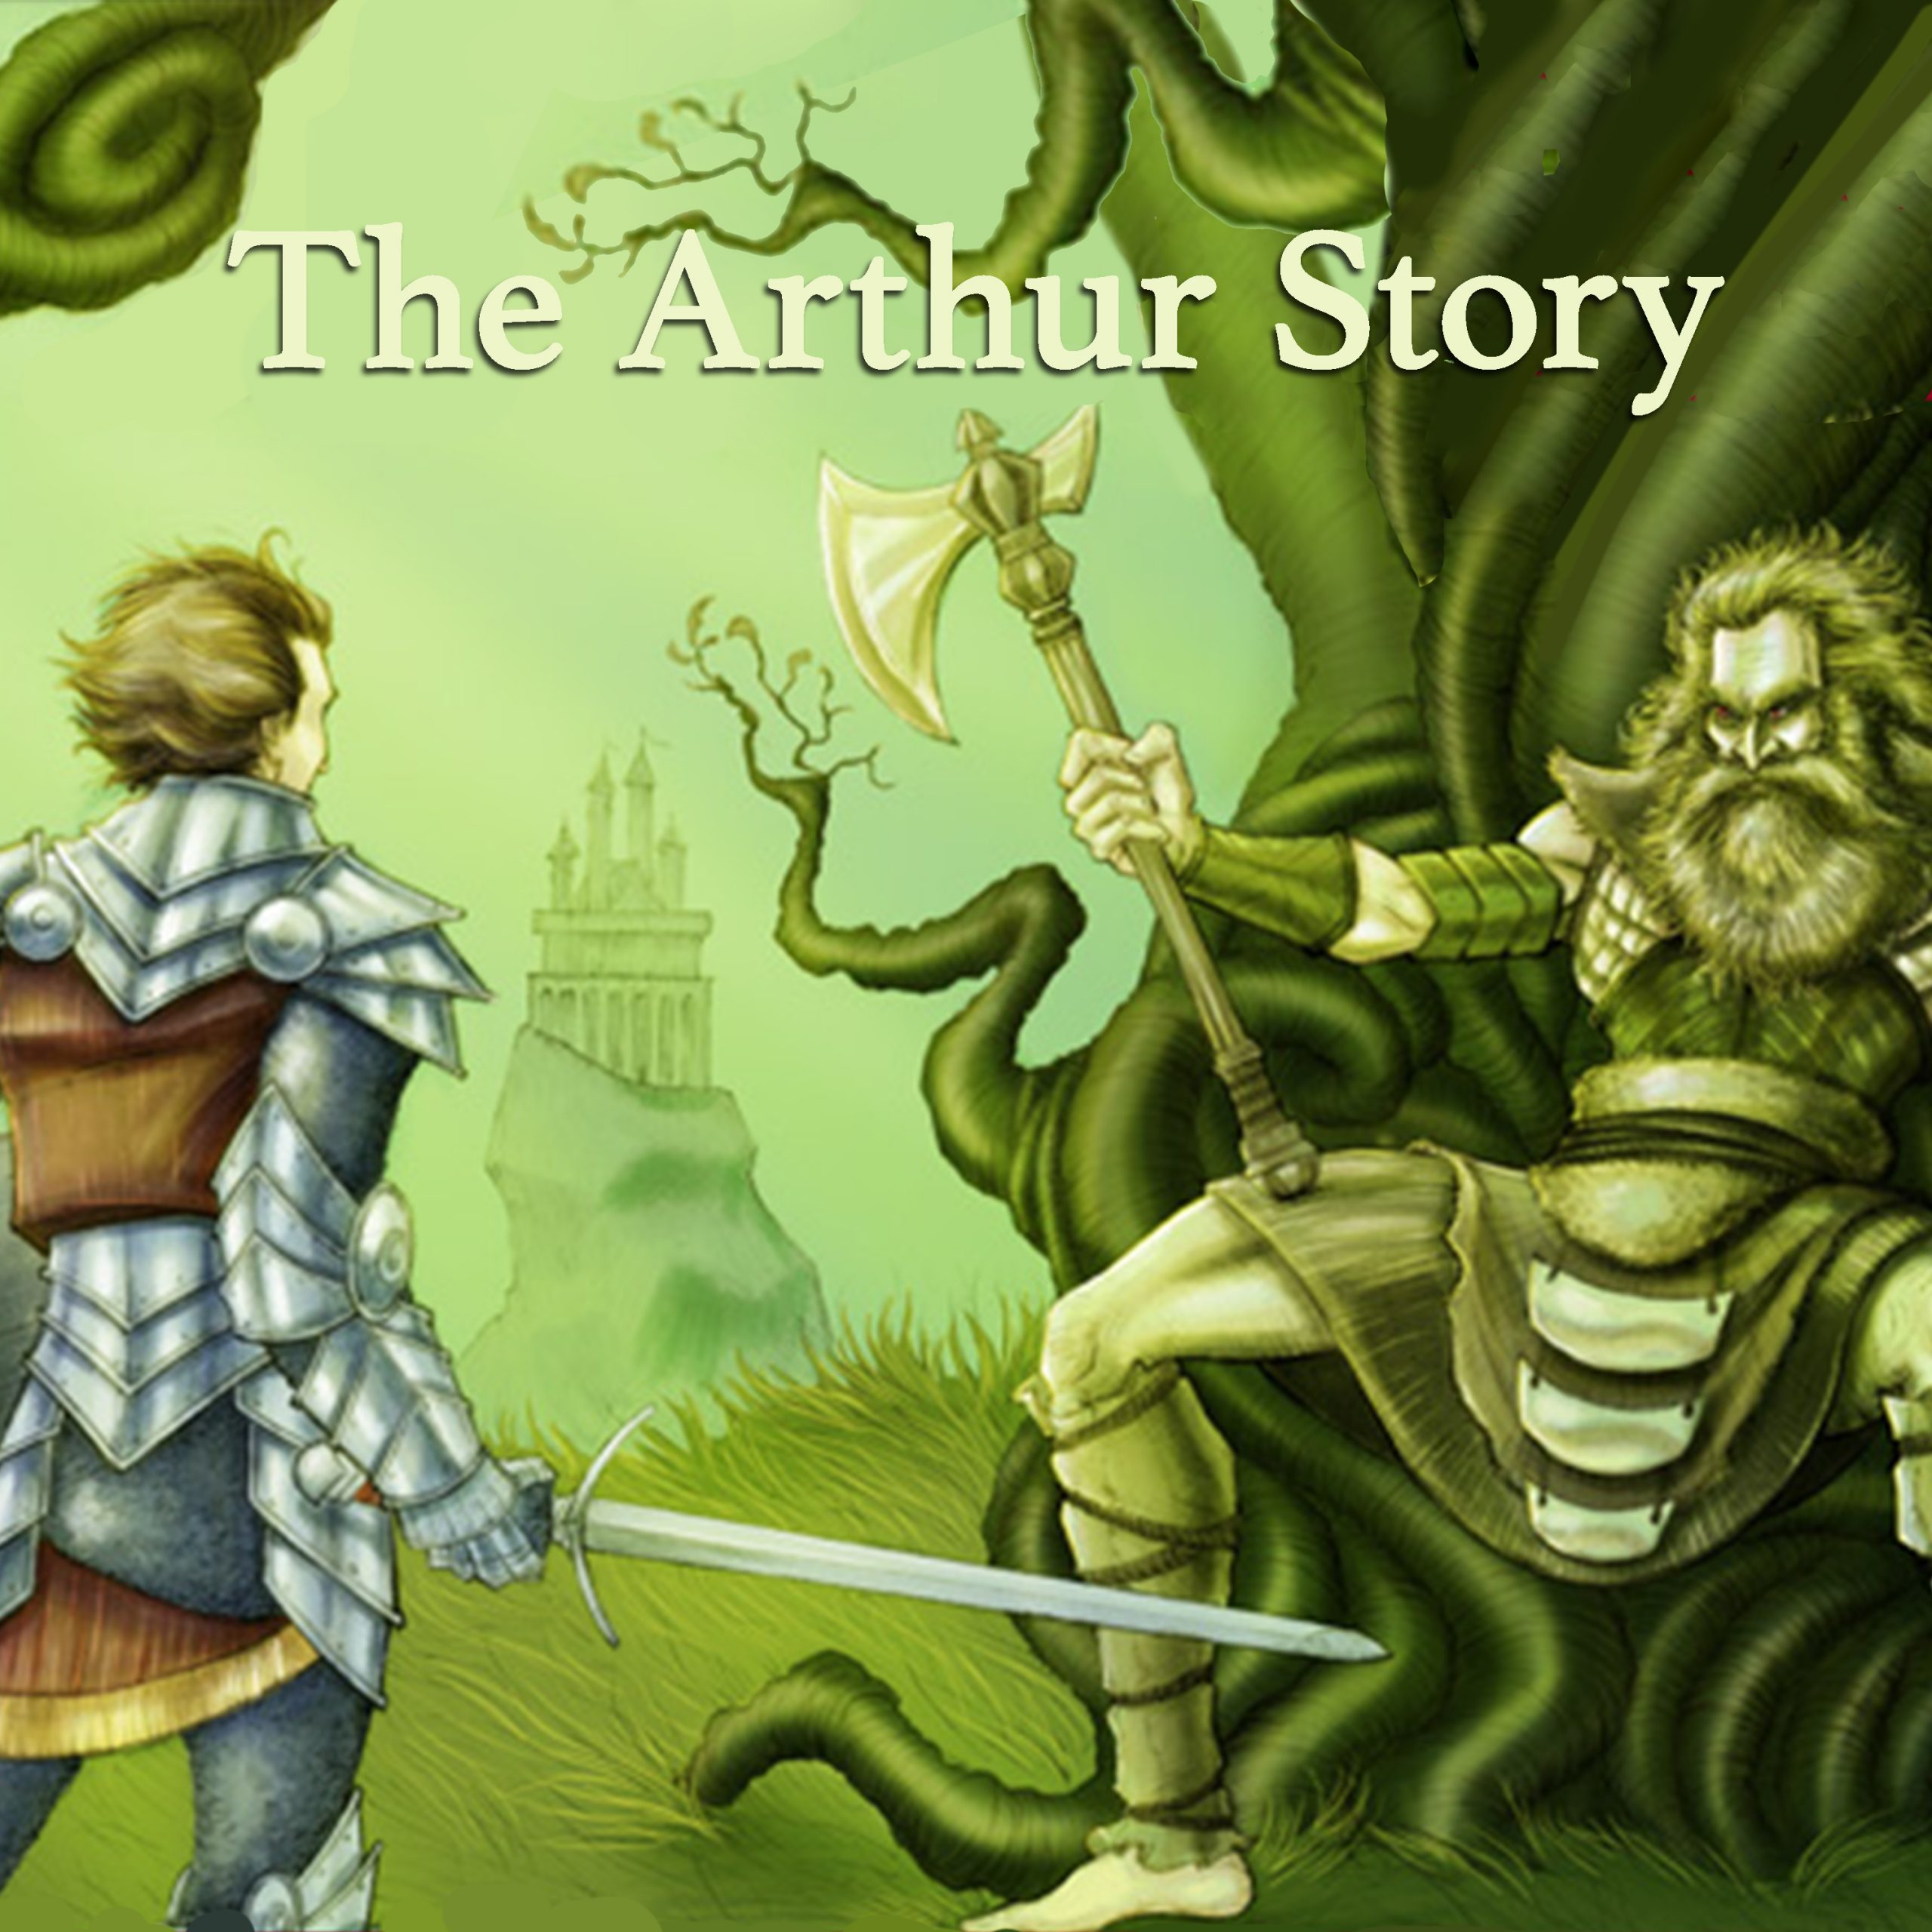 The Arthur Story